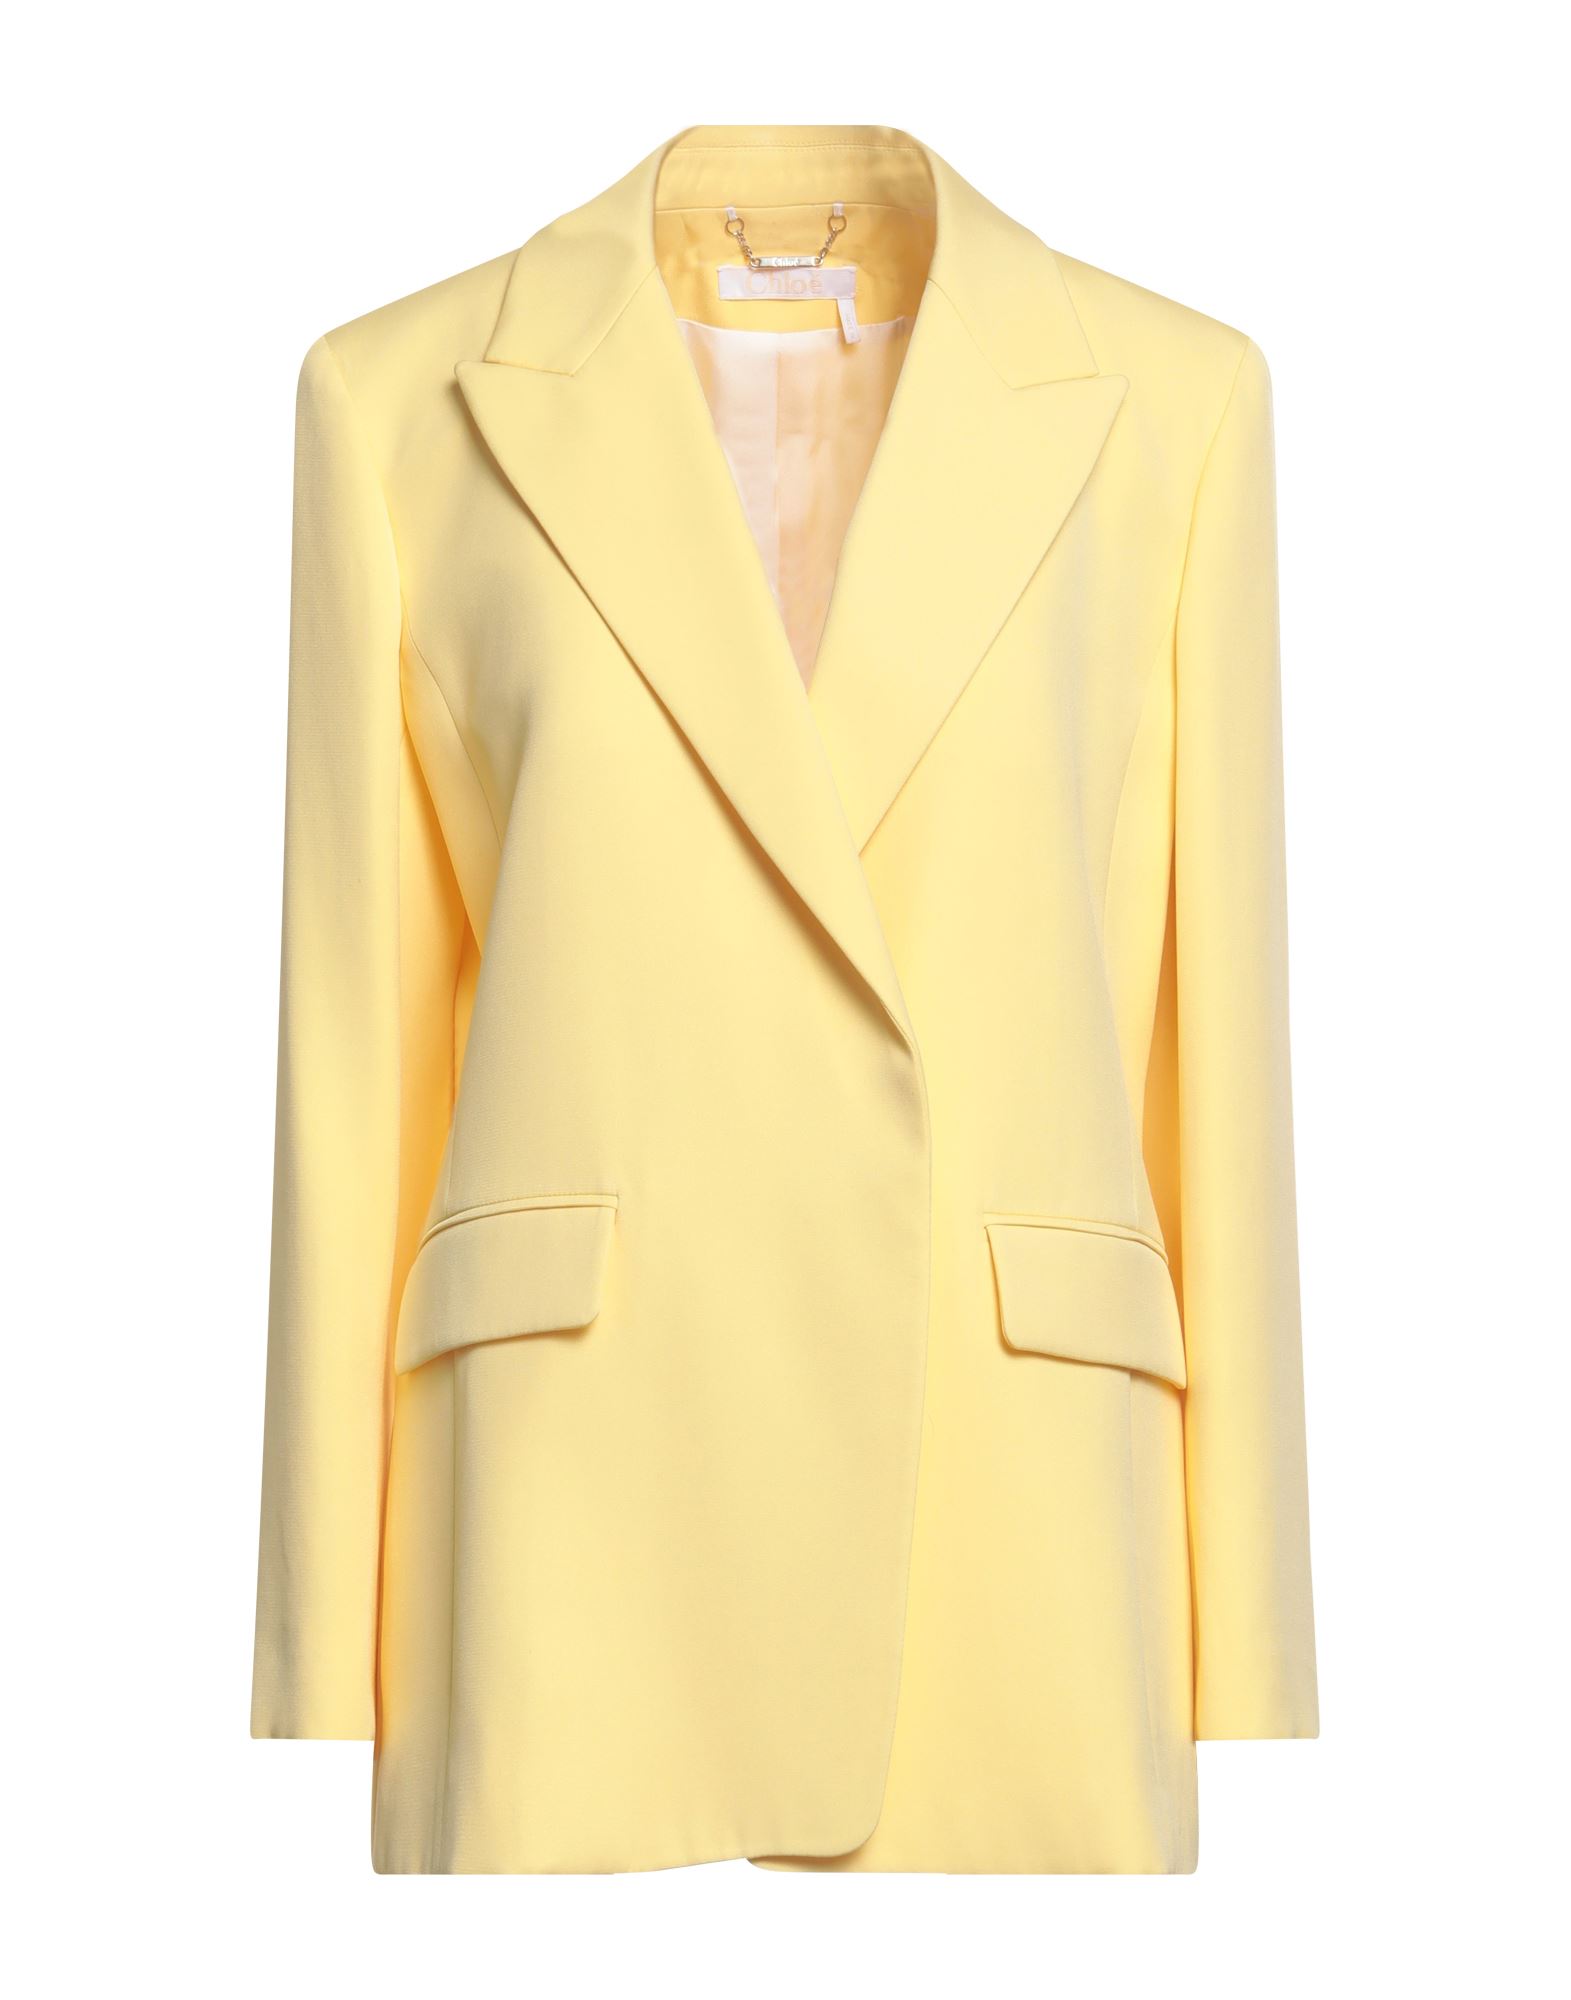 Chloé Woman Blazer Yellow Size 8 Silk